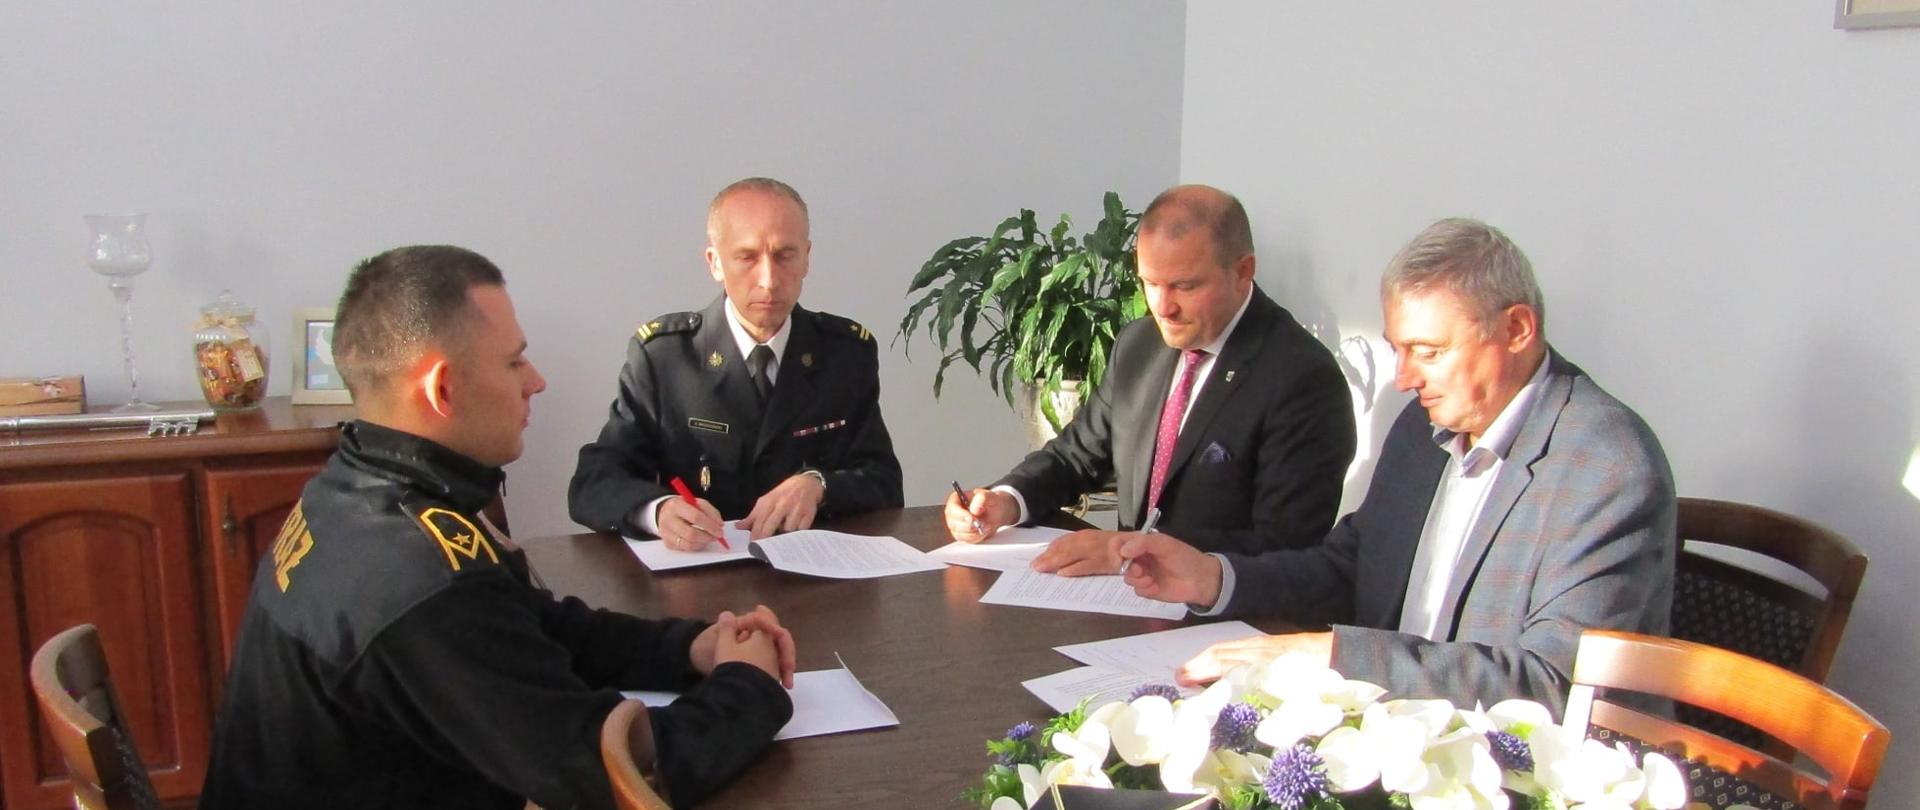 Zdjęcie podczas podpisywania trójstronnego porozumienia w sprawie włączenie OSP Zajączkówko do ksrg w Urzędzie Gminy Połczyn-Zdrój 